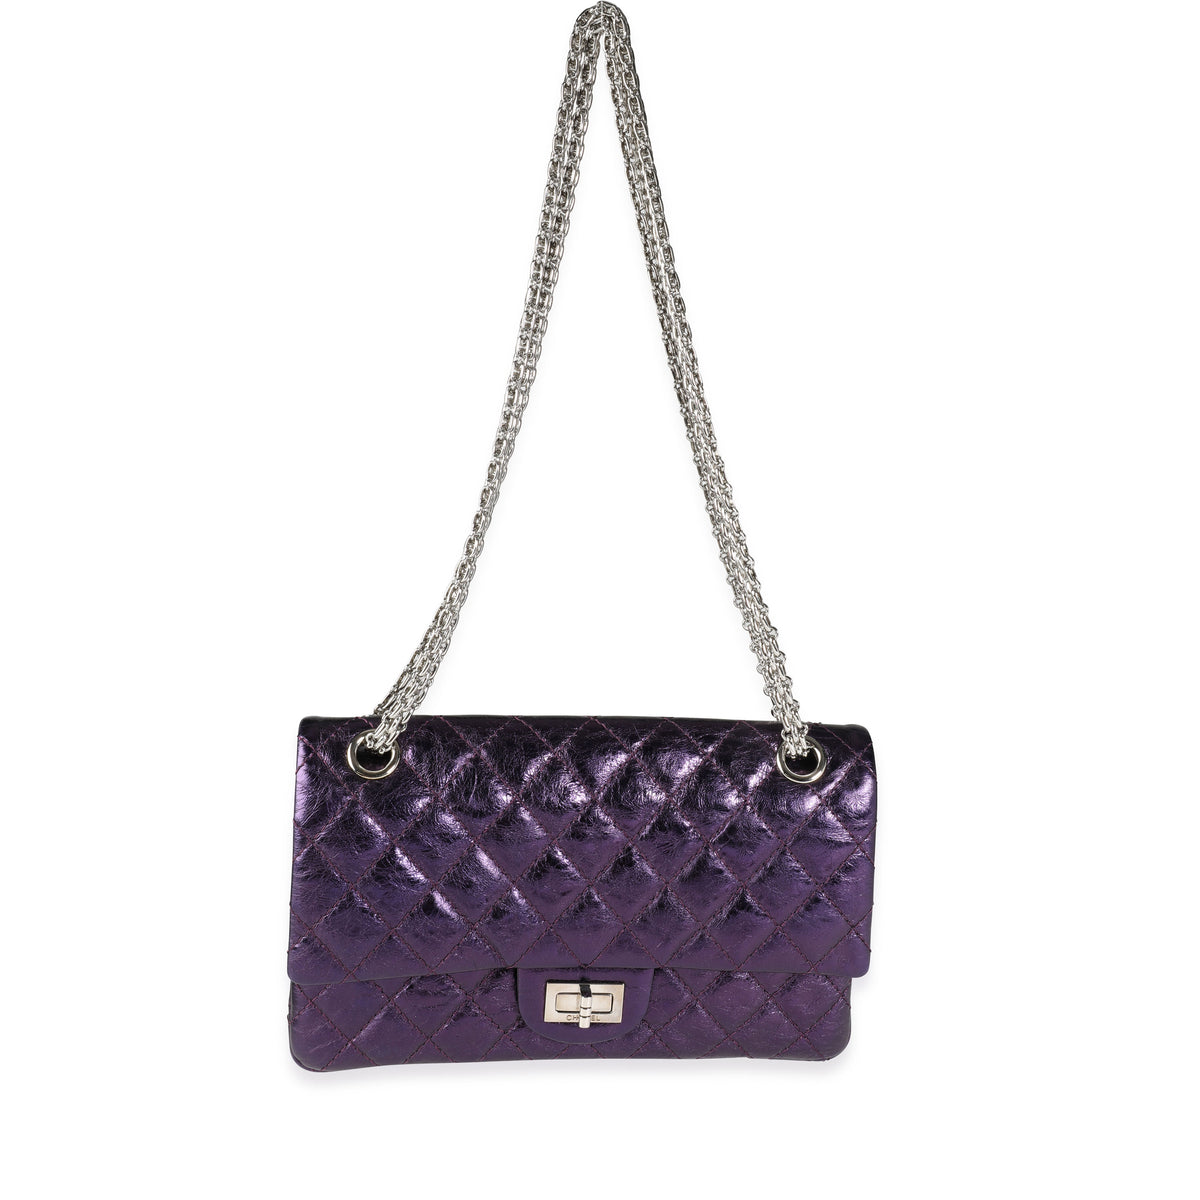 CHANEL MINI CF VS. SMALL 2.55 REISSUE Comparison Review, Luxury Handbag